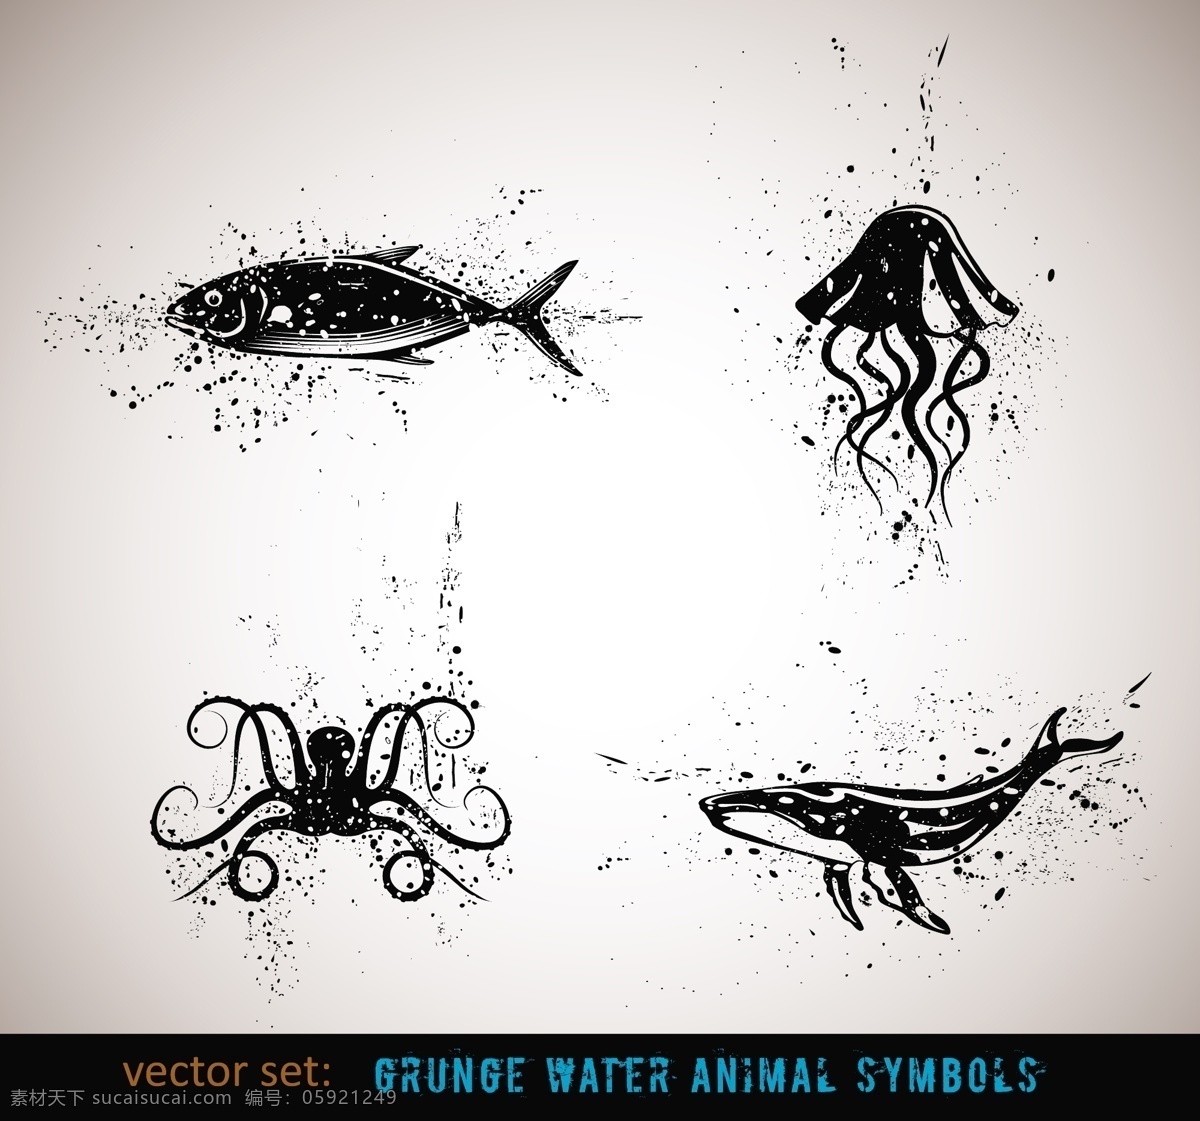 墨迹 组成 海洋 动物 卡通 可爱 卡通生物 海洋动物 墨点 章鱼 水母 鲨鱼 陆地动物 生物世界 矢量素材 白色